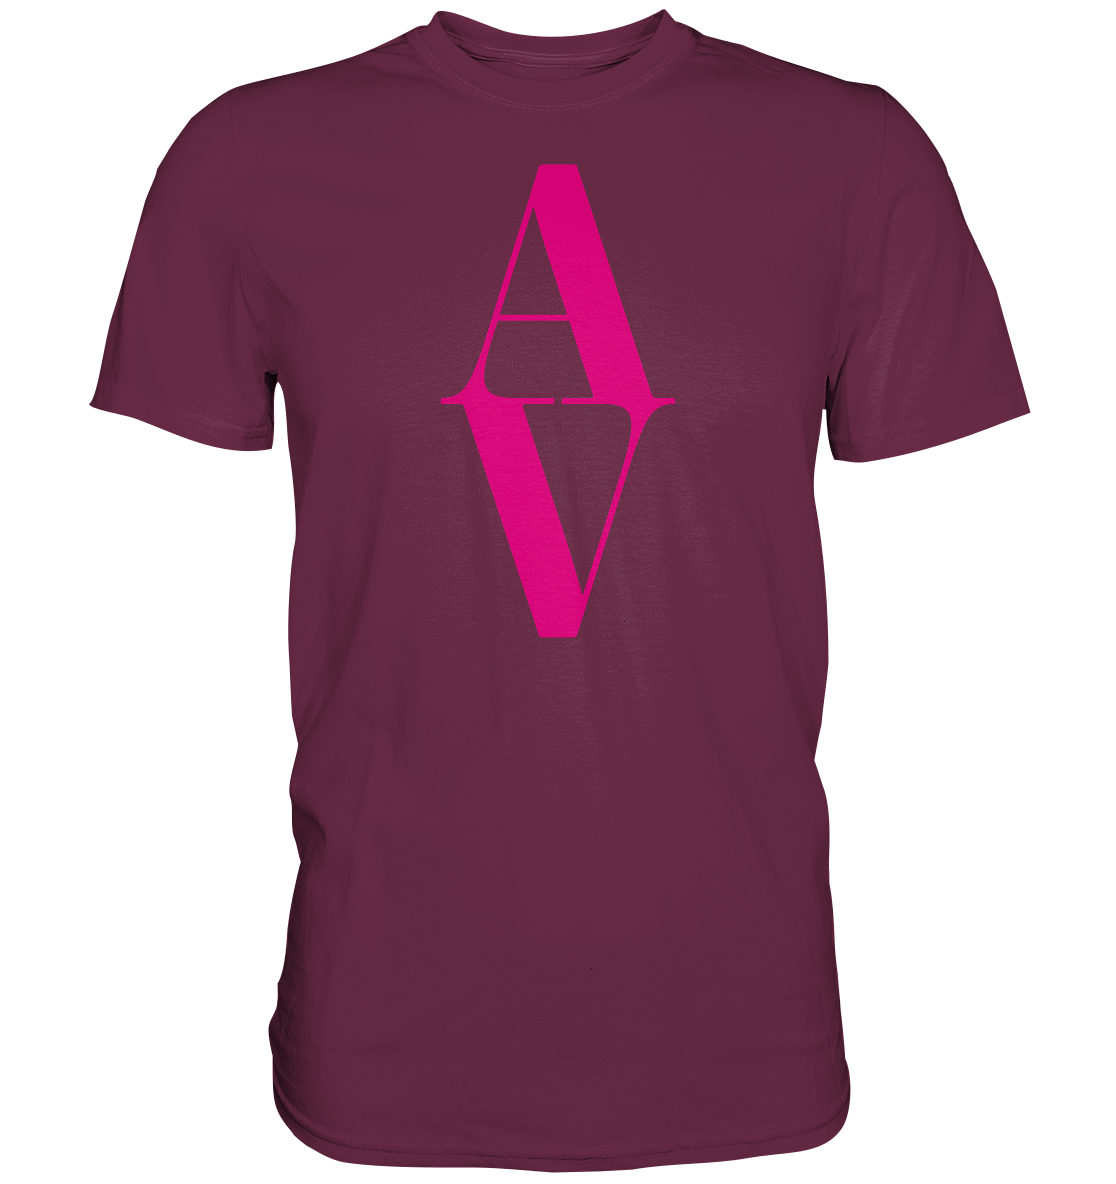 AV / Premium Unisex Tshirt with Pink AV Logo